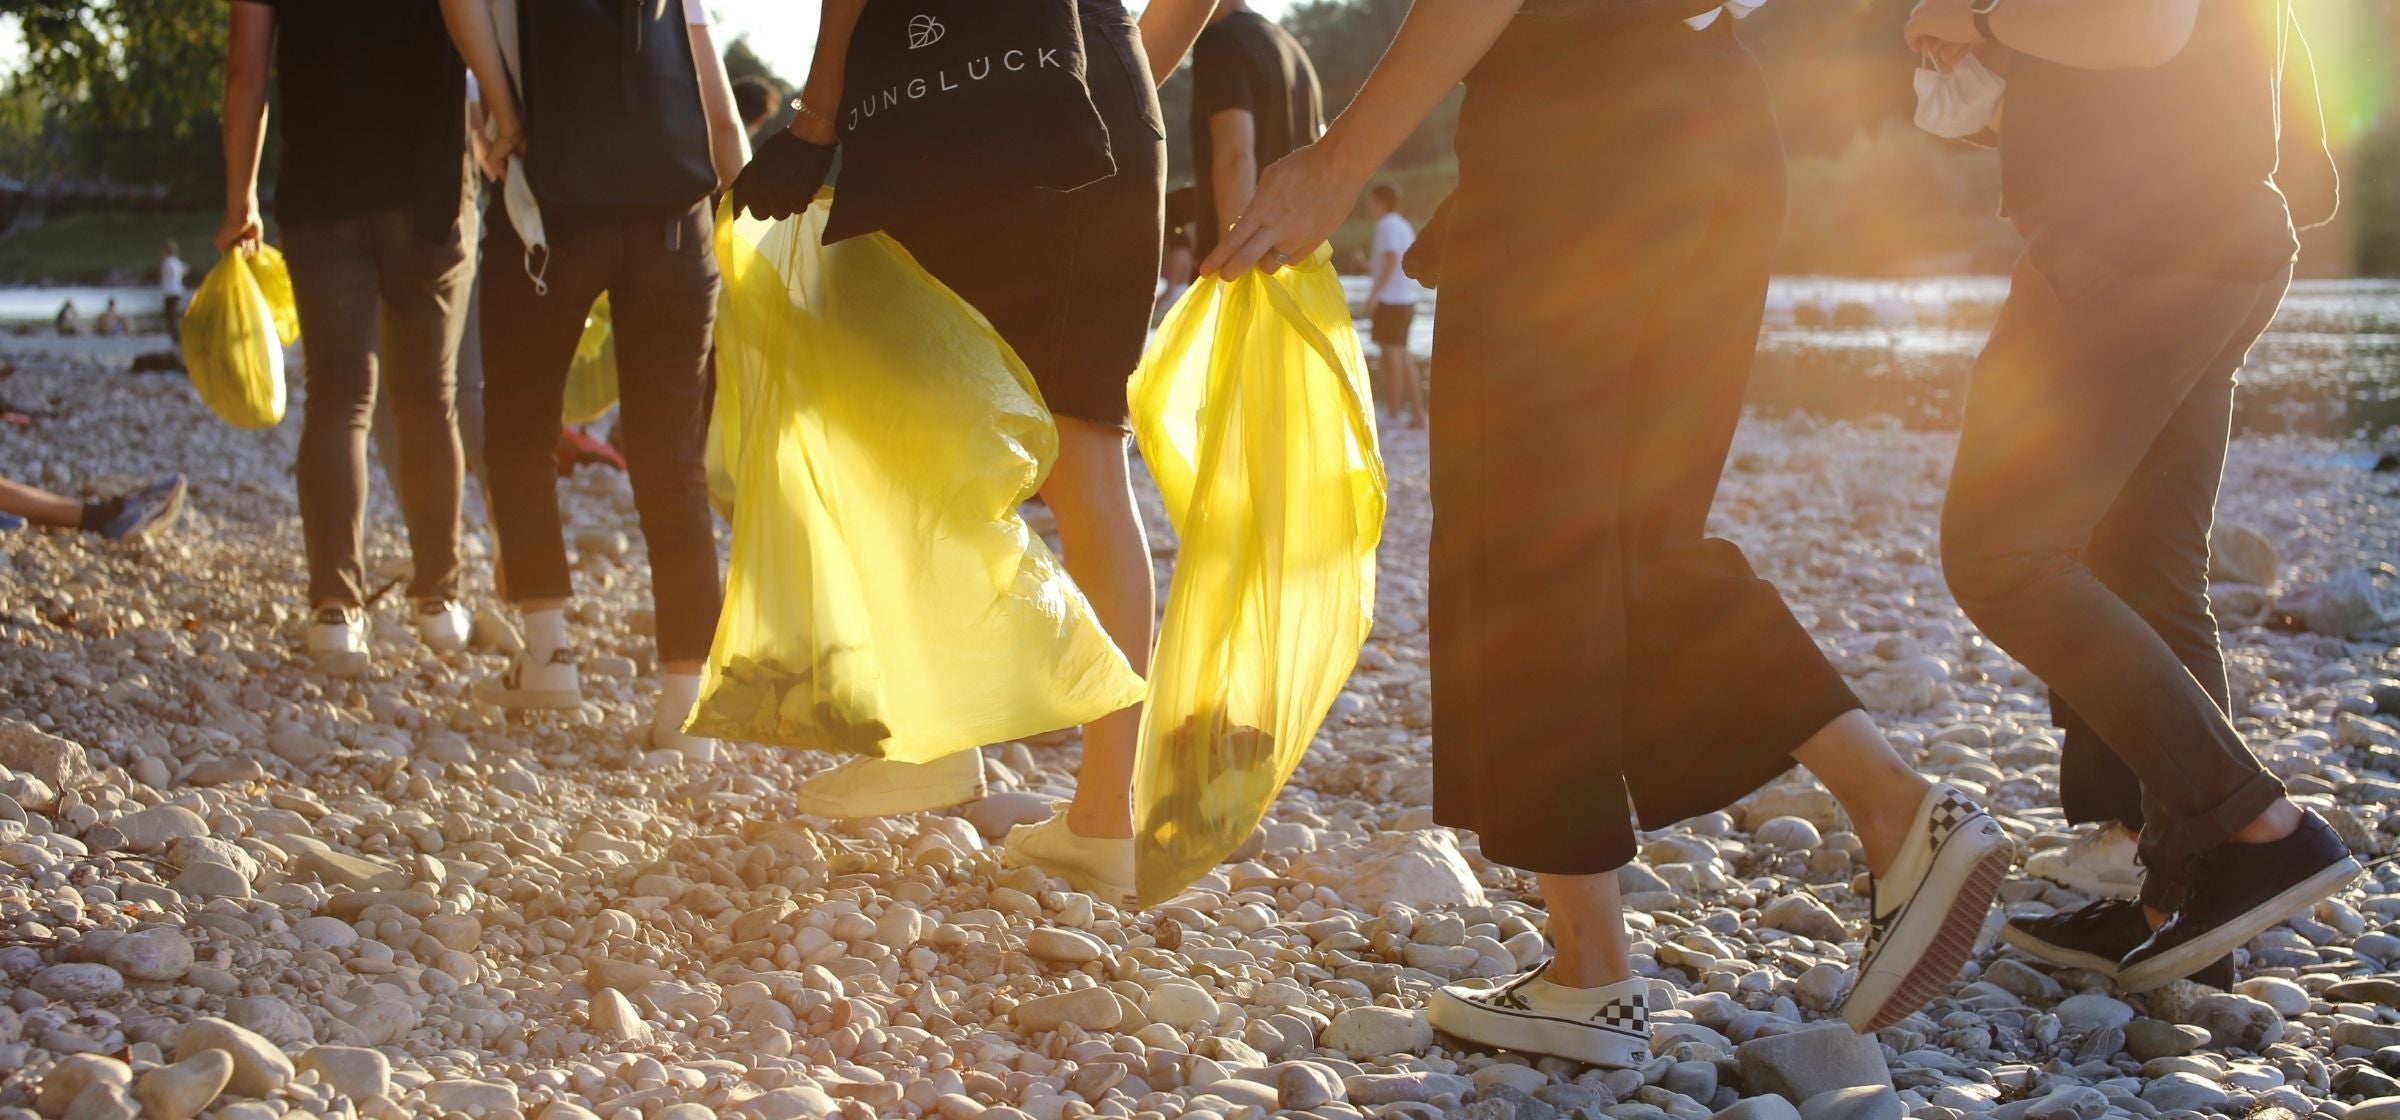 Personen am World Clean Up Day die auf Kies laufen und Mülltüten tragen.